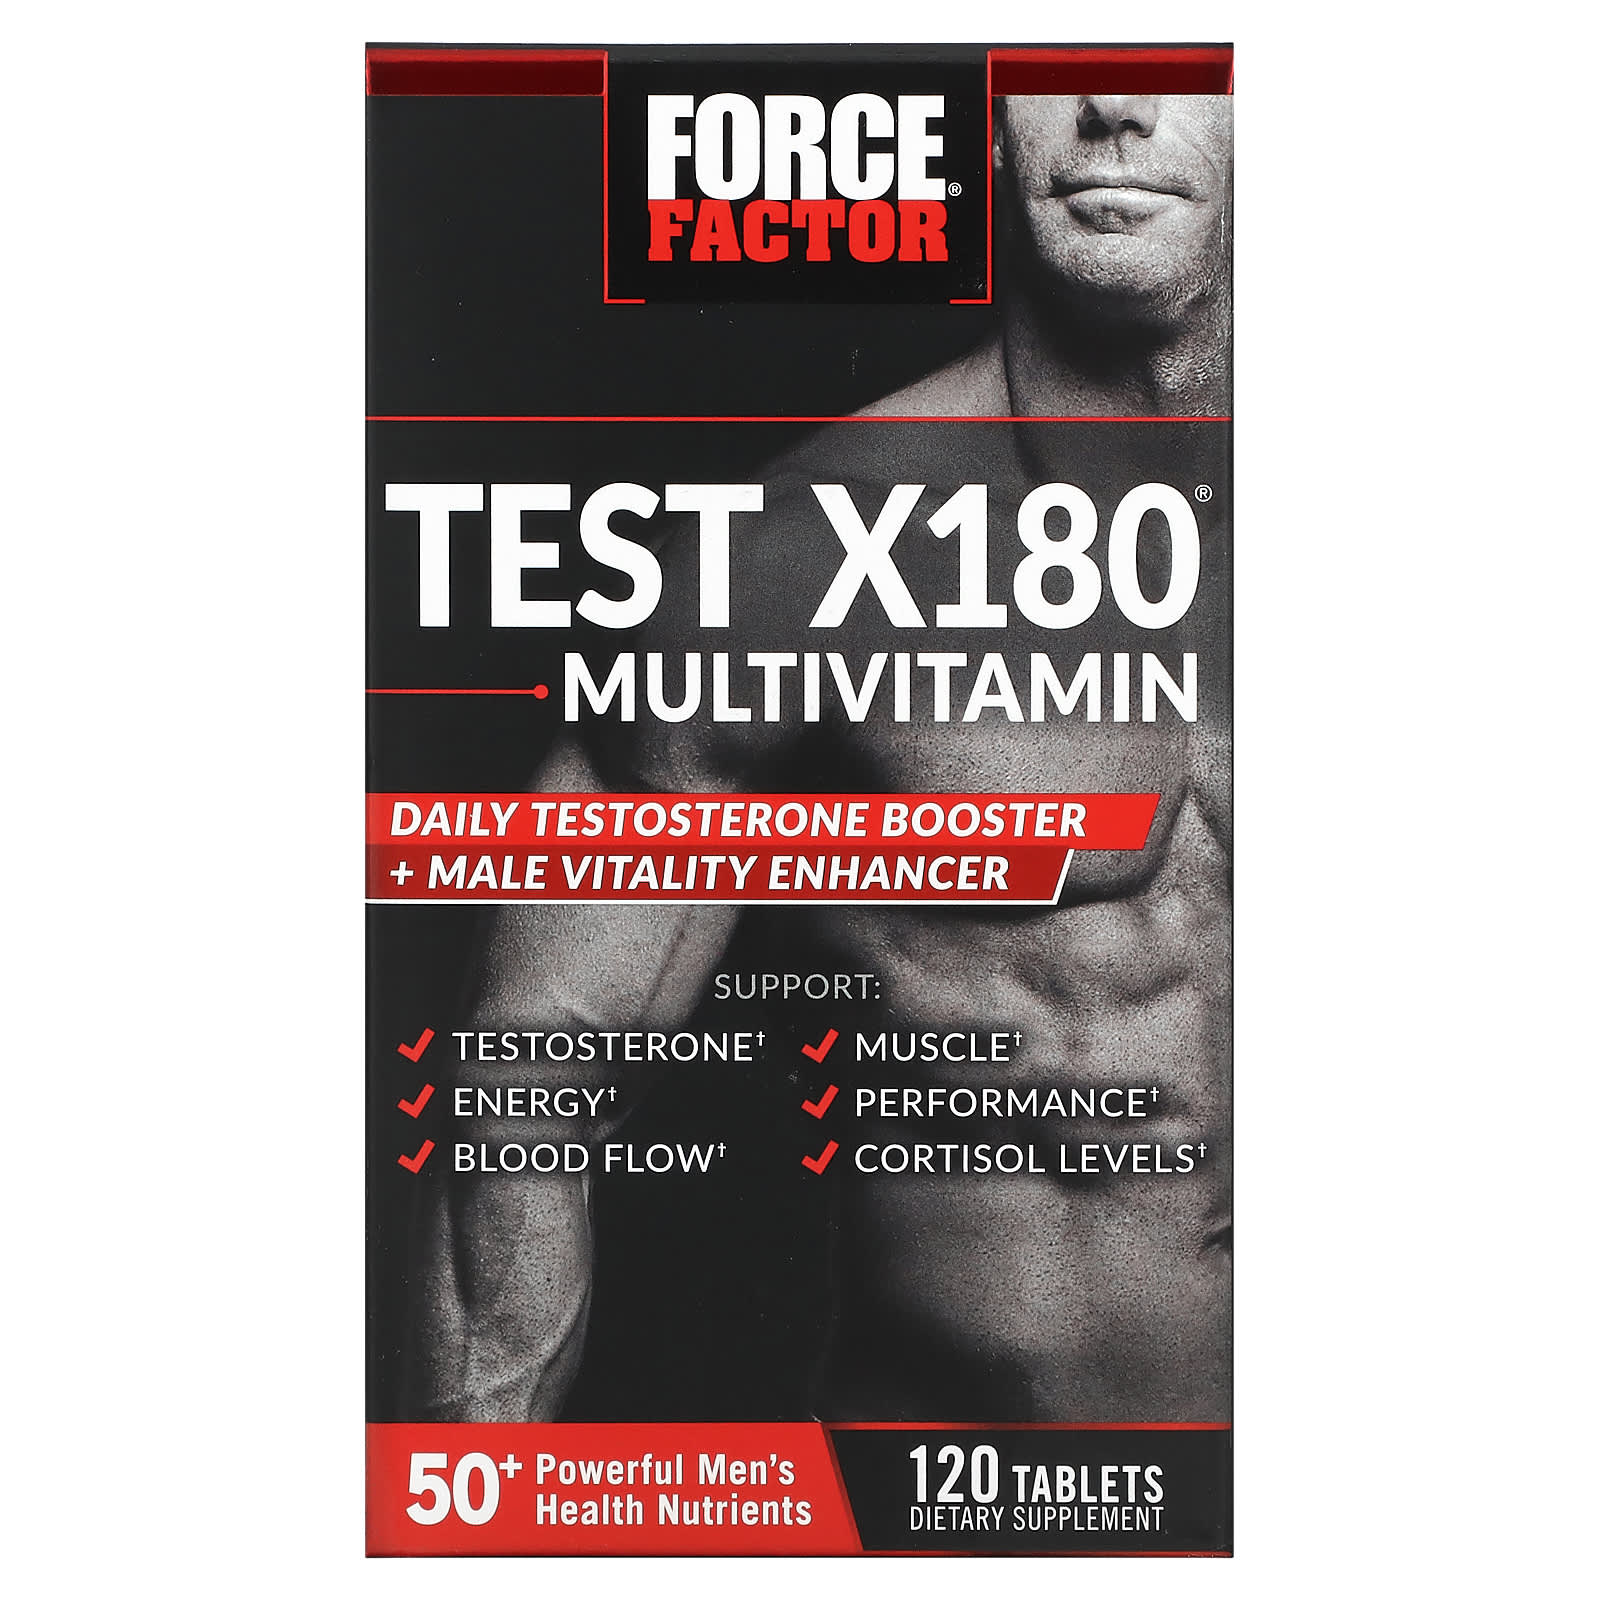 Мультивитамины и Усилитель Тестостерона Force Factor, 120 таблеток force factor test x180 v2 общий усилитель тестостерона 90 таблеток